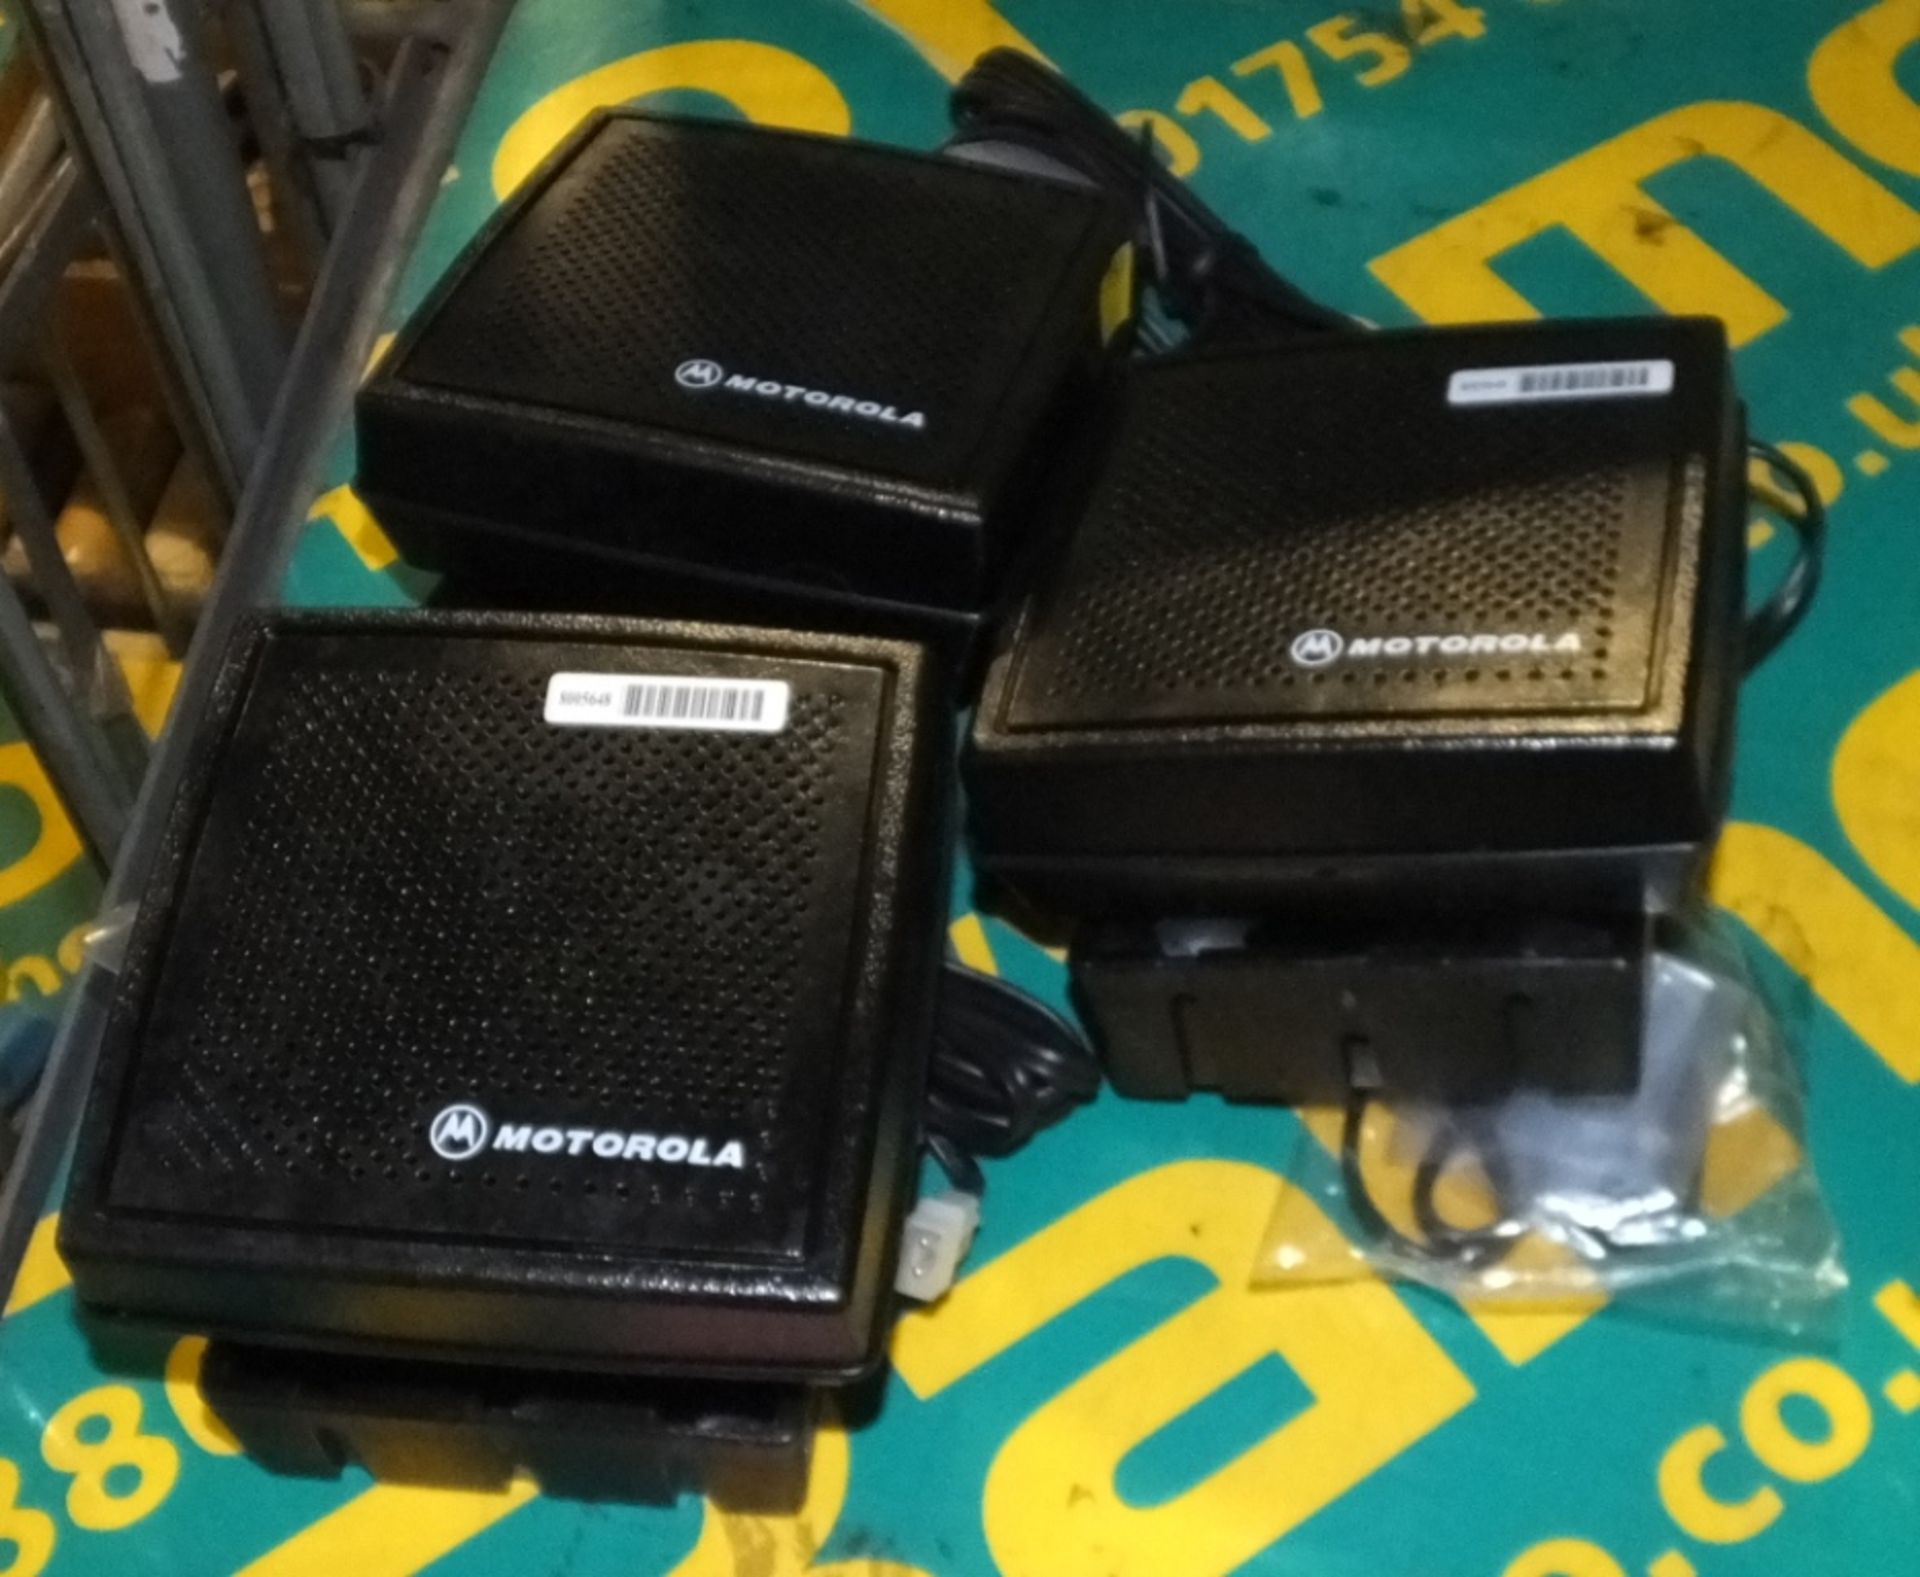 3x Motorola desktop speakers